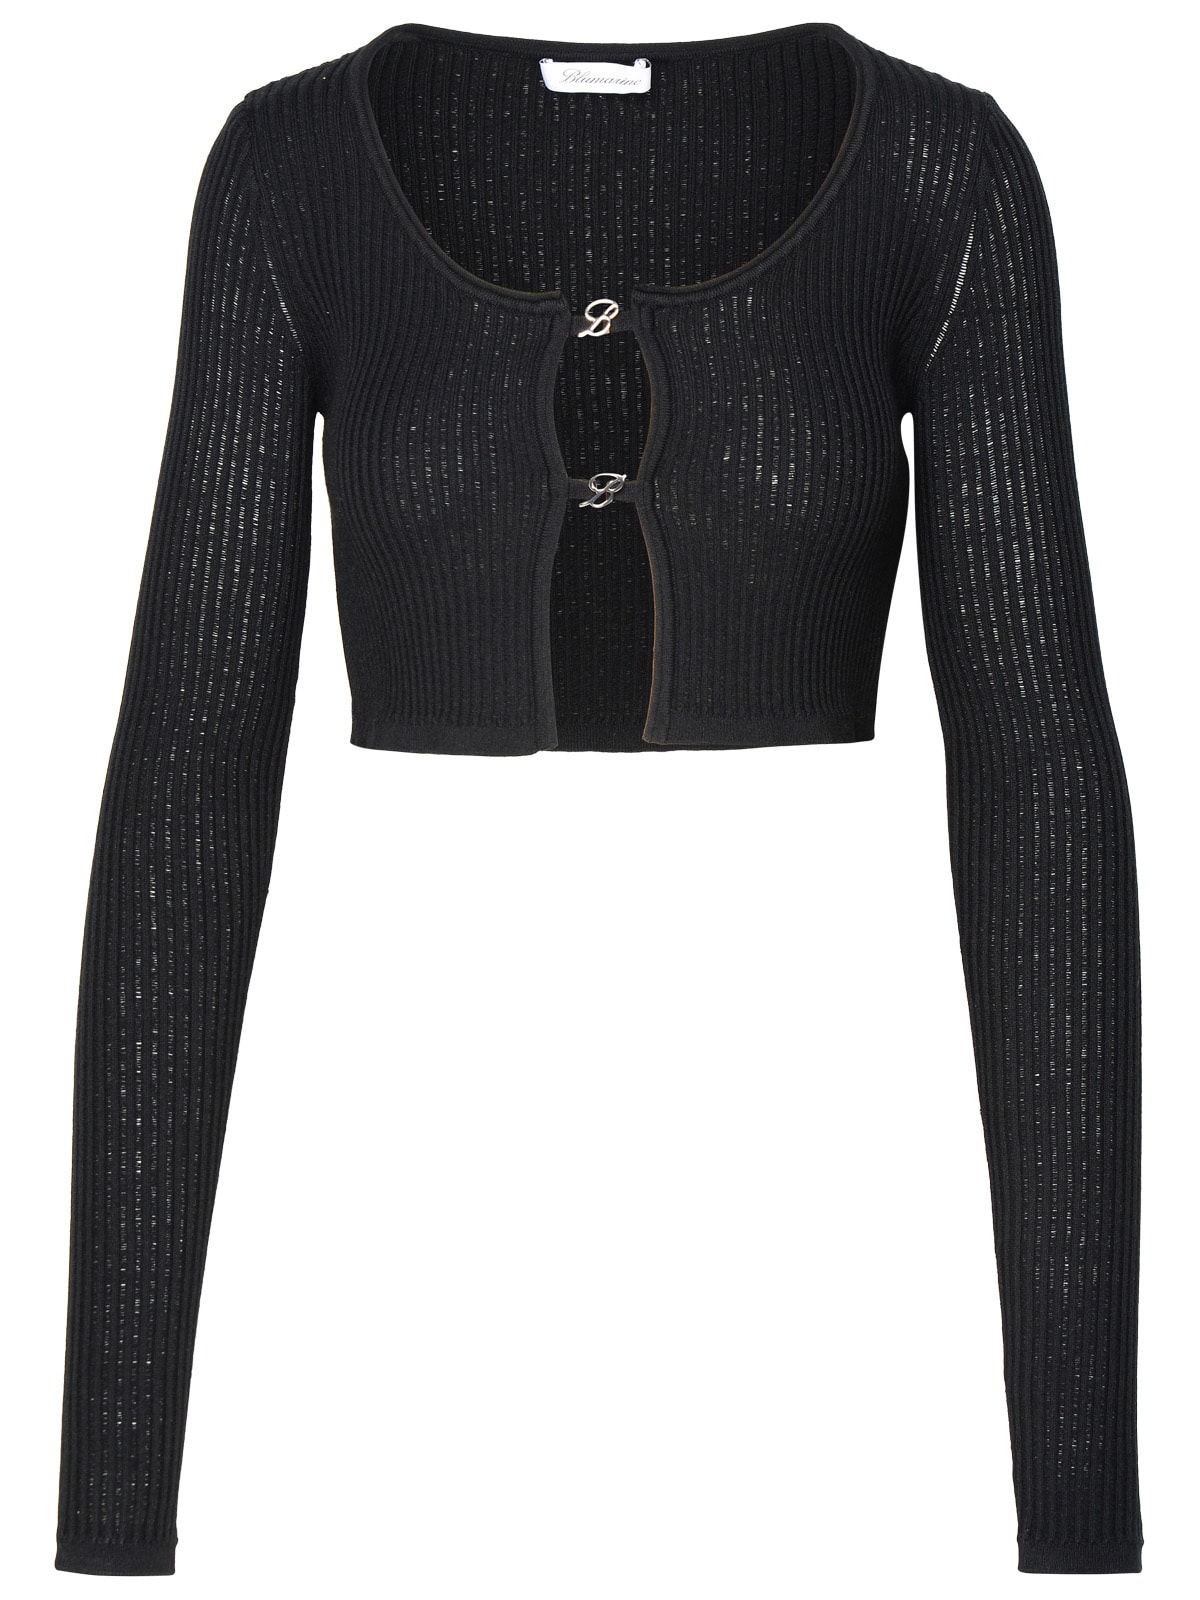 Crop Sweater In Black Viscose Blend